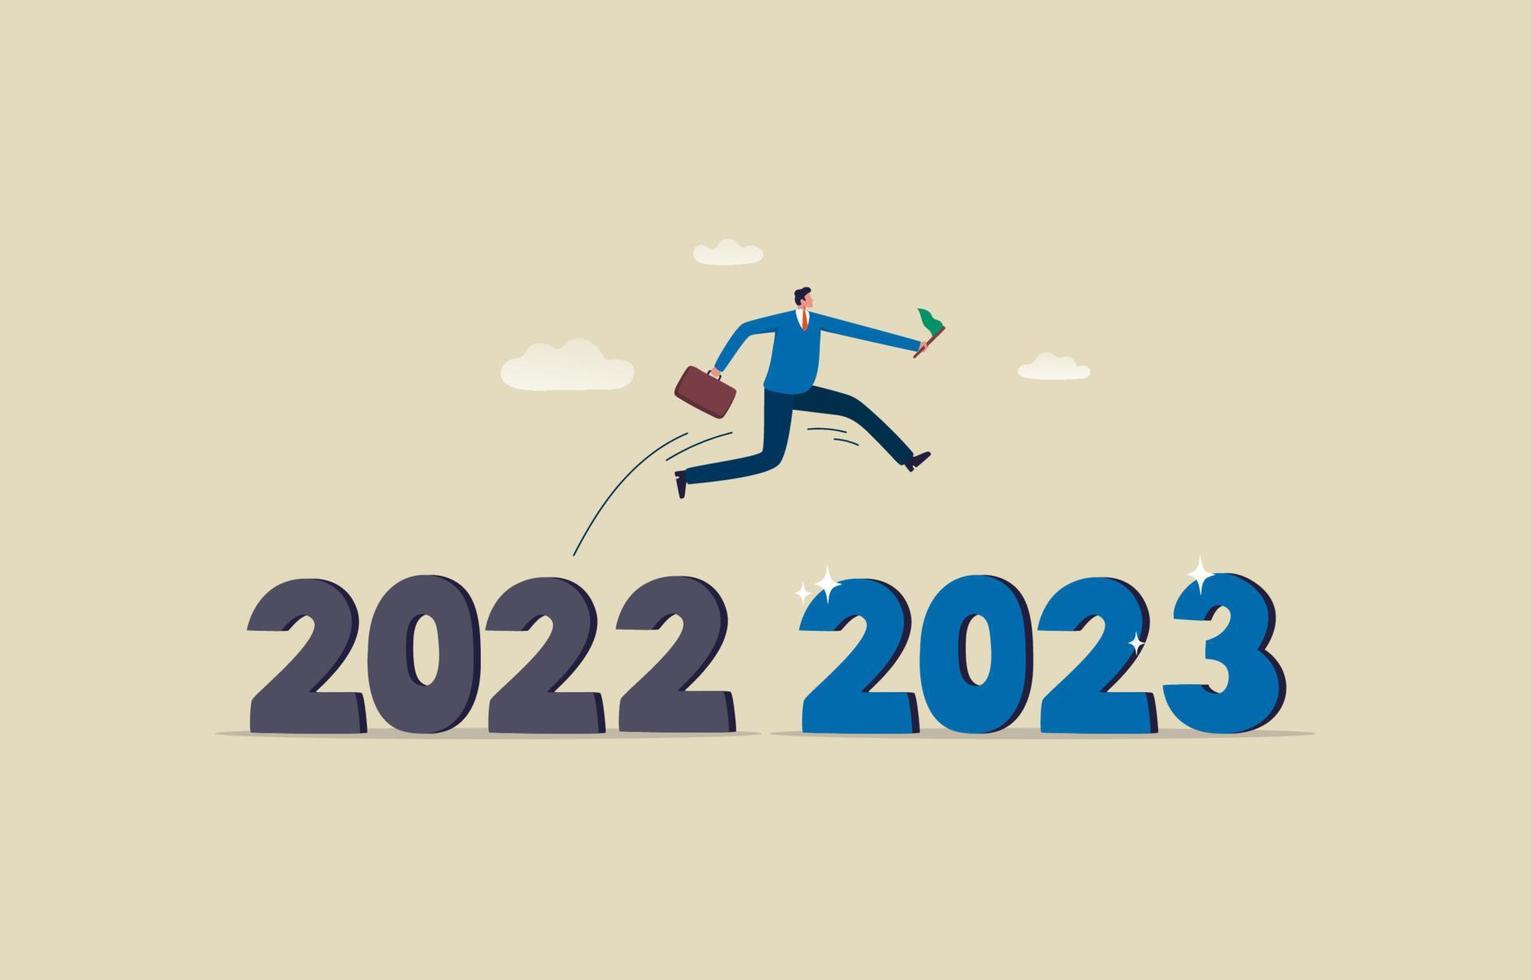 Concept de bonne année 2023. homme d'affaires sautant de l'année 2022 à la nouvelle année 2023. succès commercial. illustration vecteur